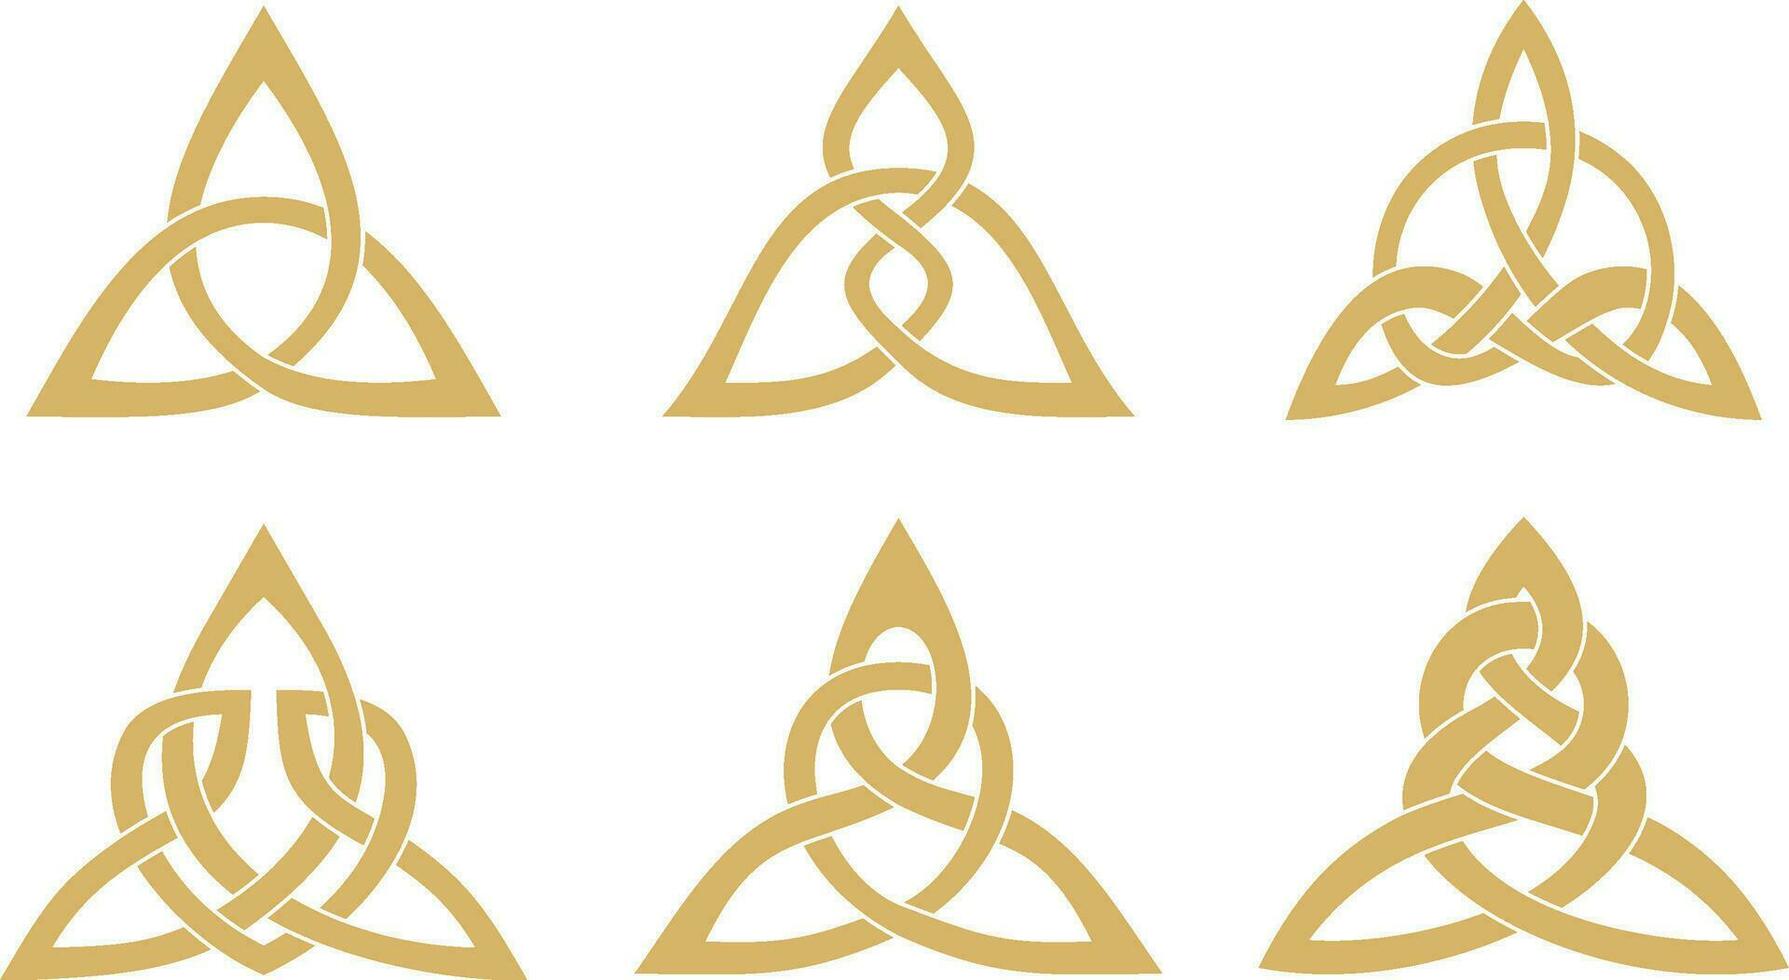 vector reeks van gouden keltisch knopen. ornament van oude Europese volkeren. de teken en symbool van de Iers, Schotten, Britten, franken